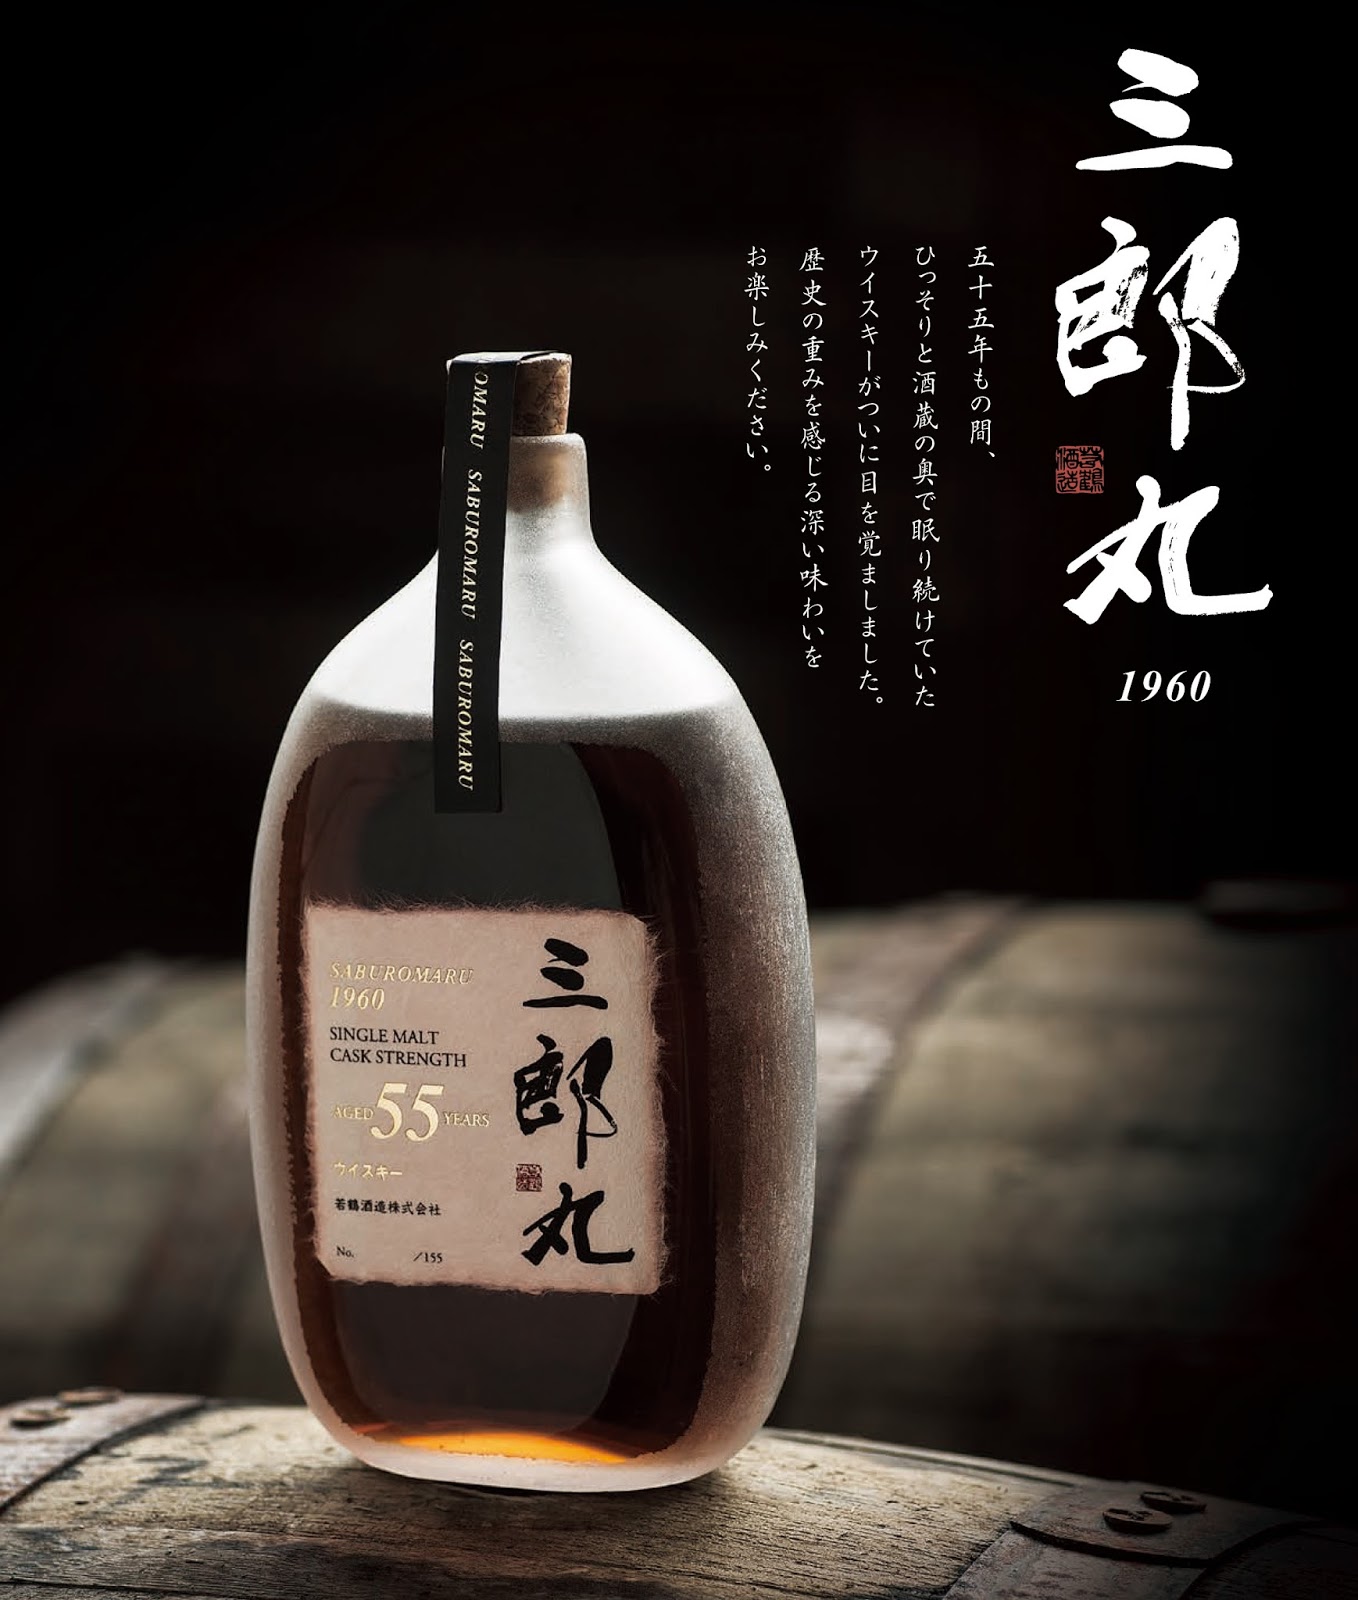 Yamazaki 55-Year-Old: Oldest Japanese Whisky Ever Announced